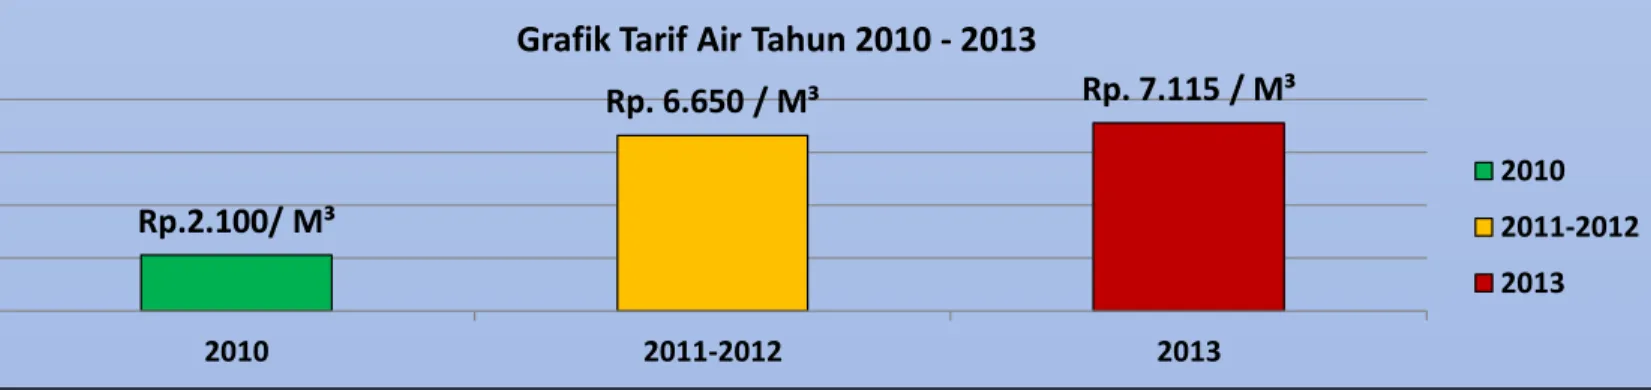 Grafik Tarif Air Tahun 2010 - 2013 